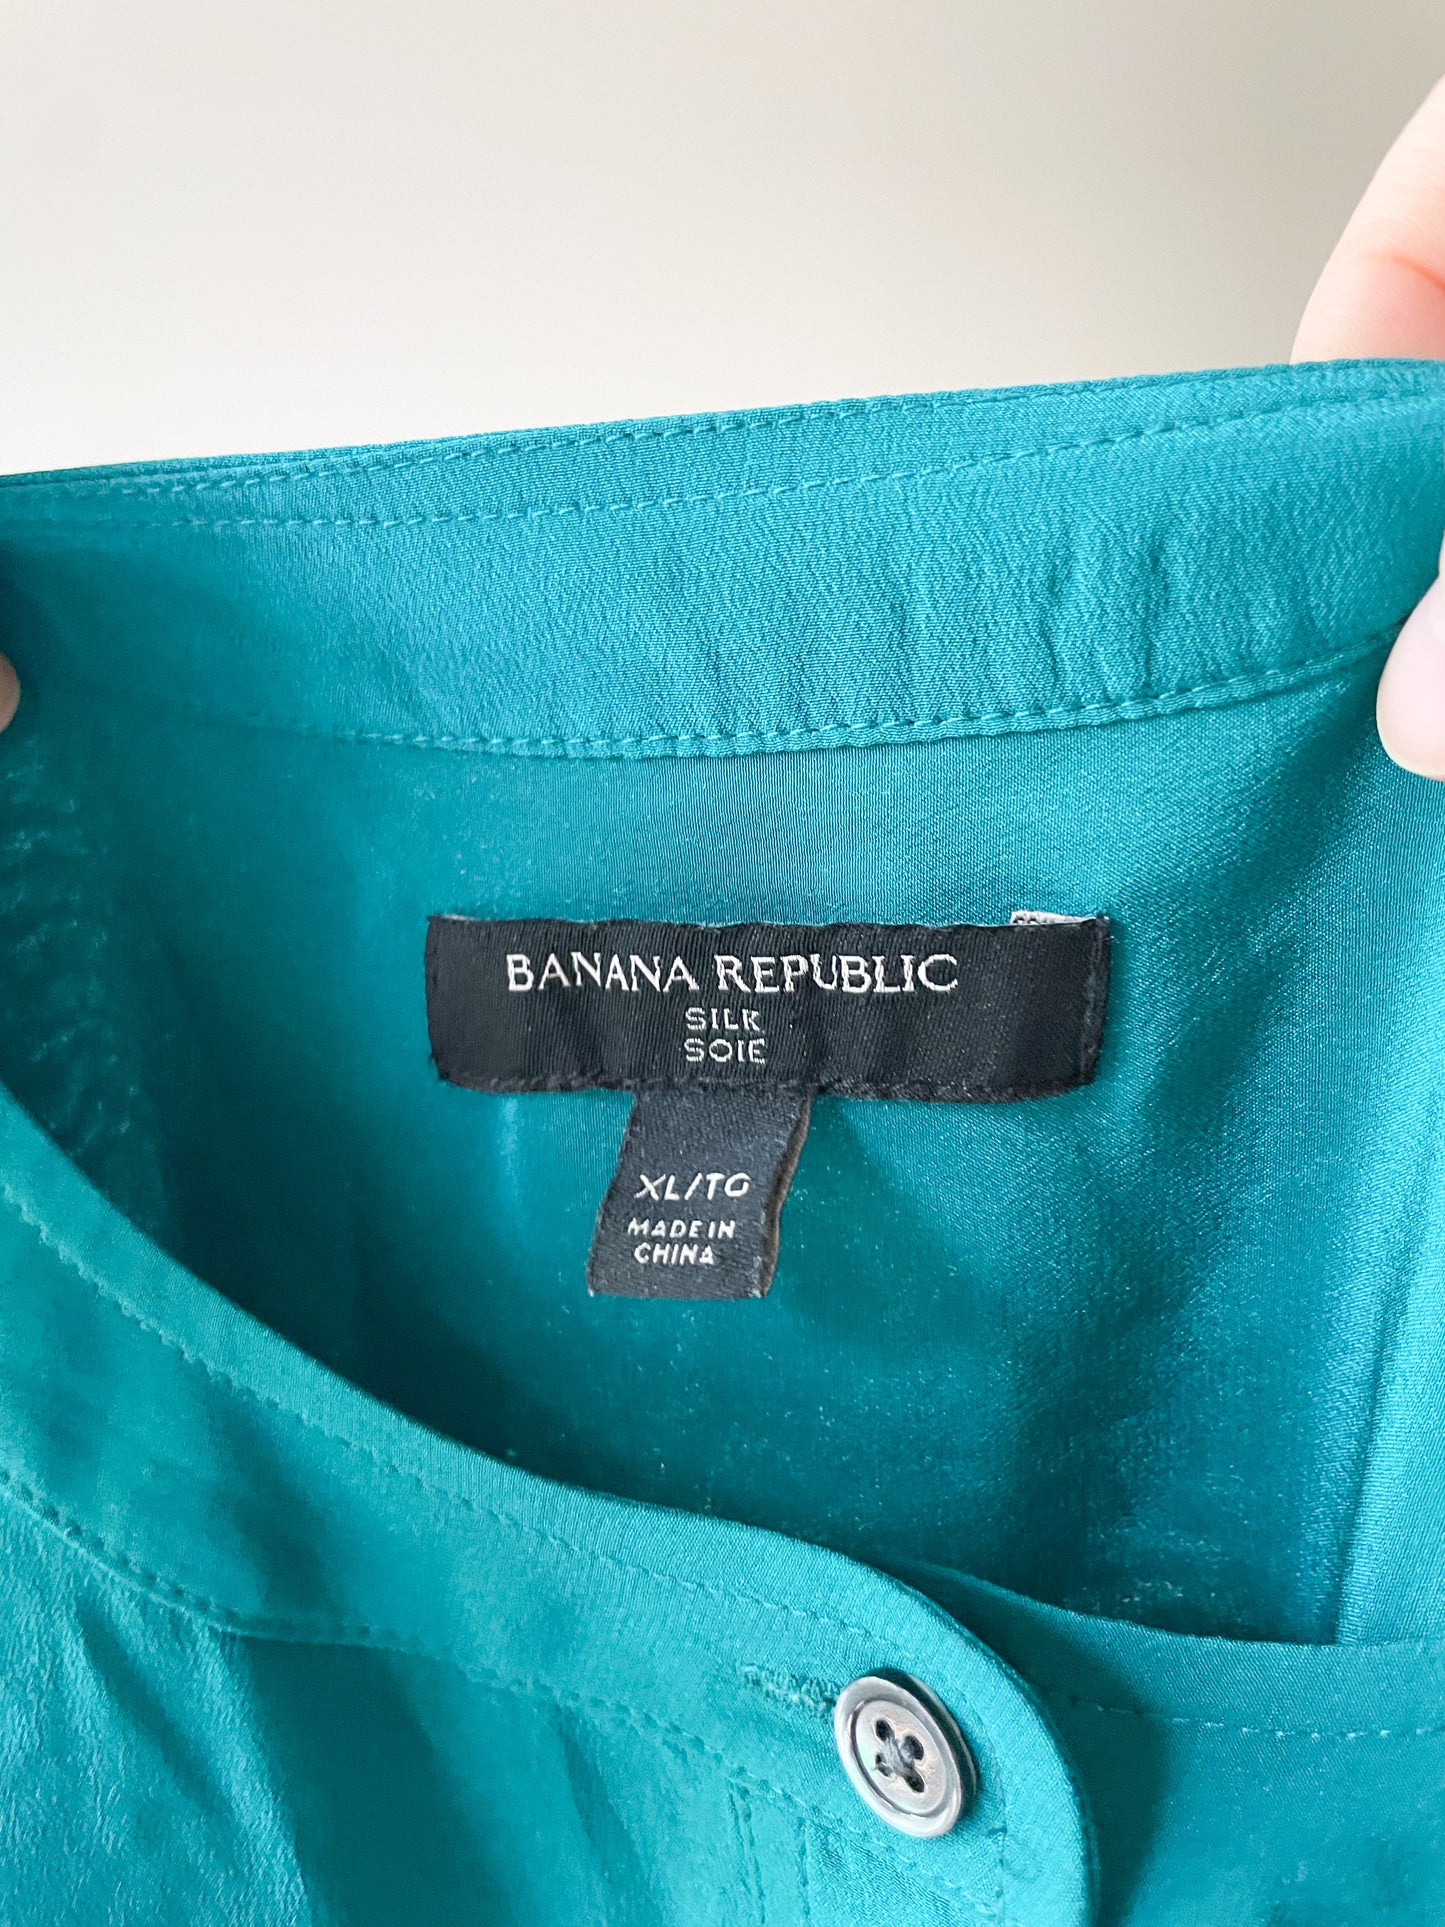 Banana Republic Teal 100% Silk Tunic Button Front Top - XL